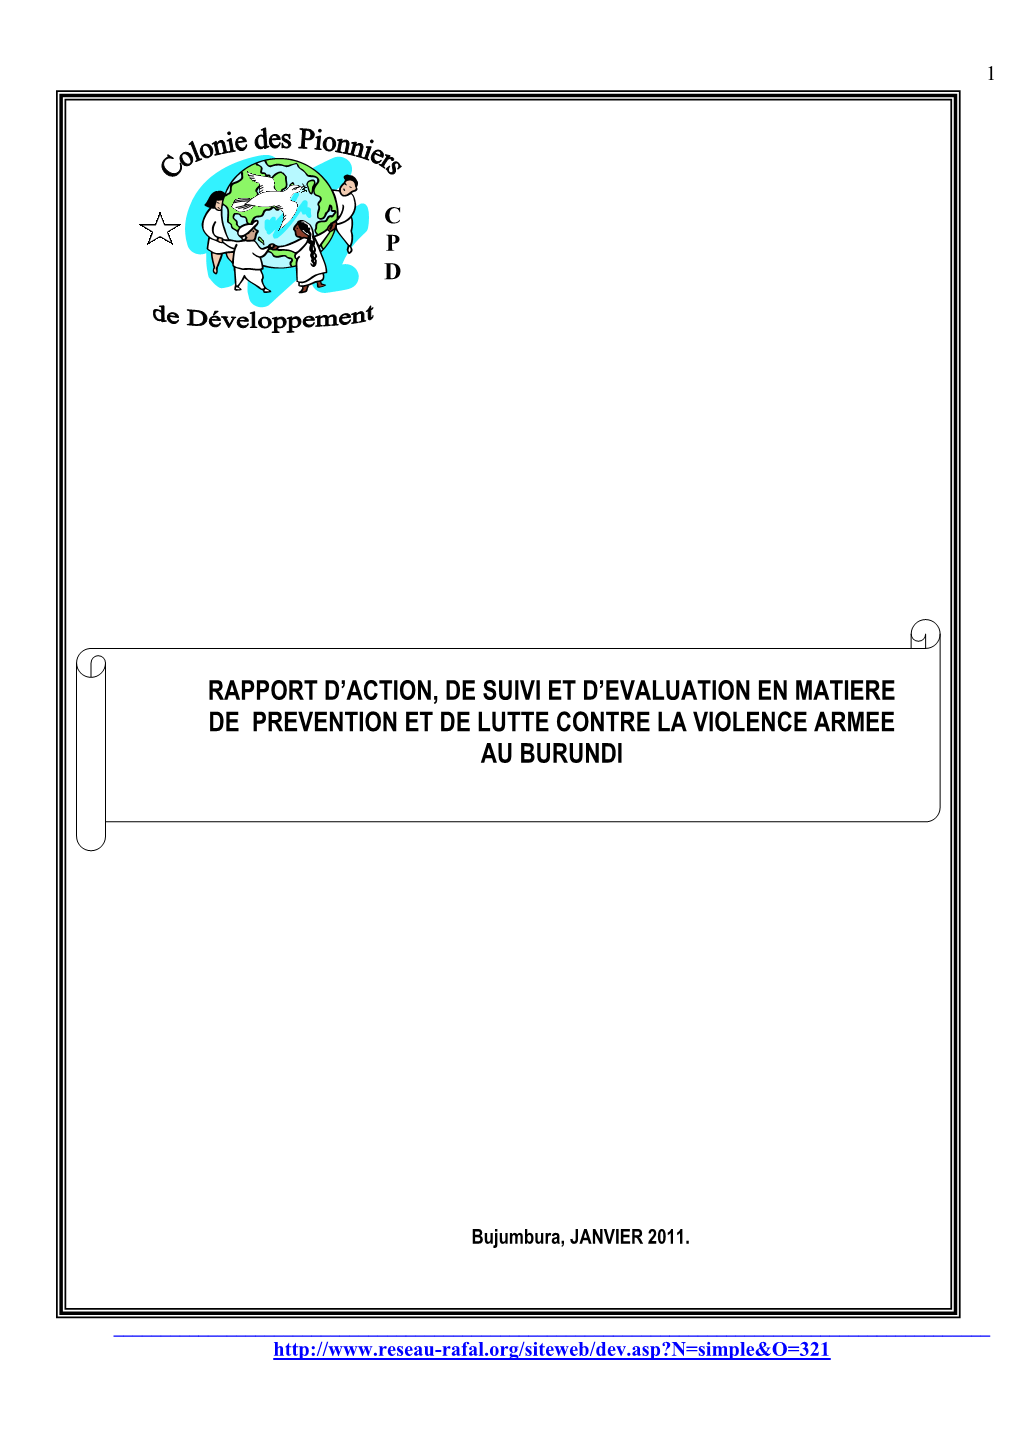 Rapport D'action, De Suivi Et D'evaluation En Matiere De Prevention Et De Lutte Contre La Violence Armee Au Burundi